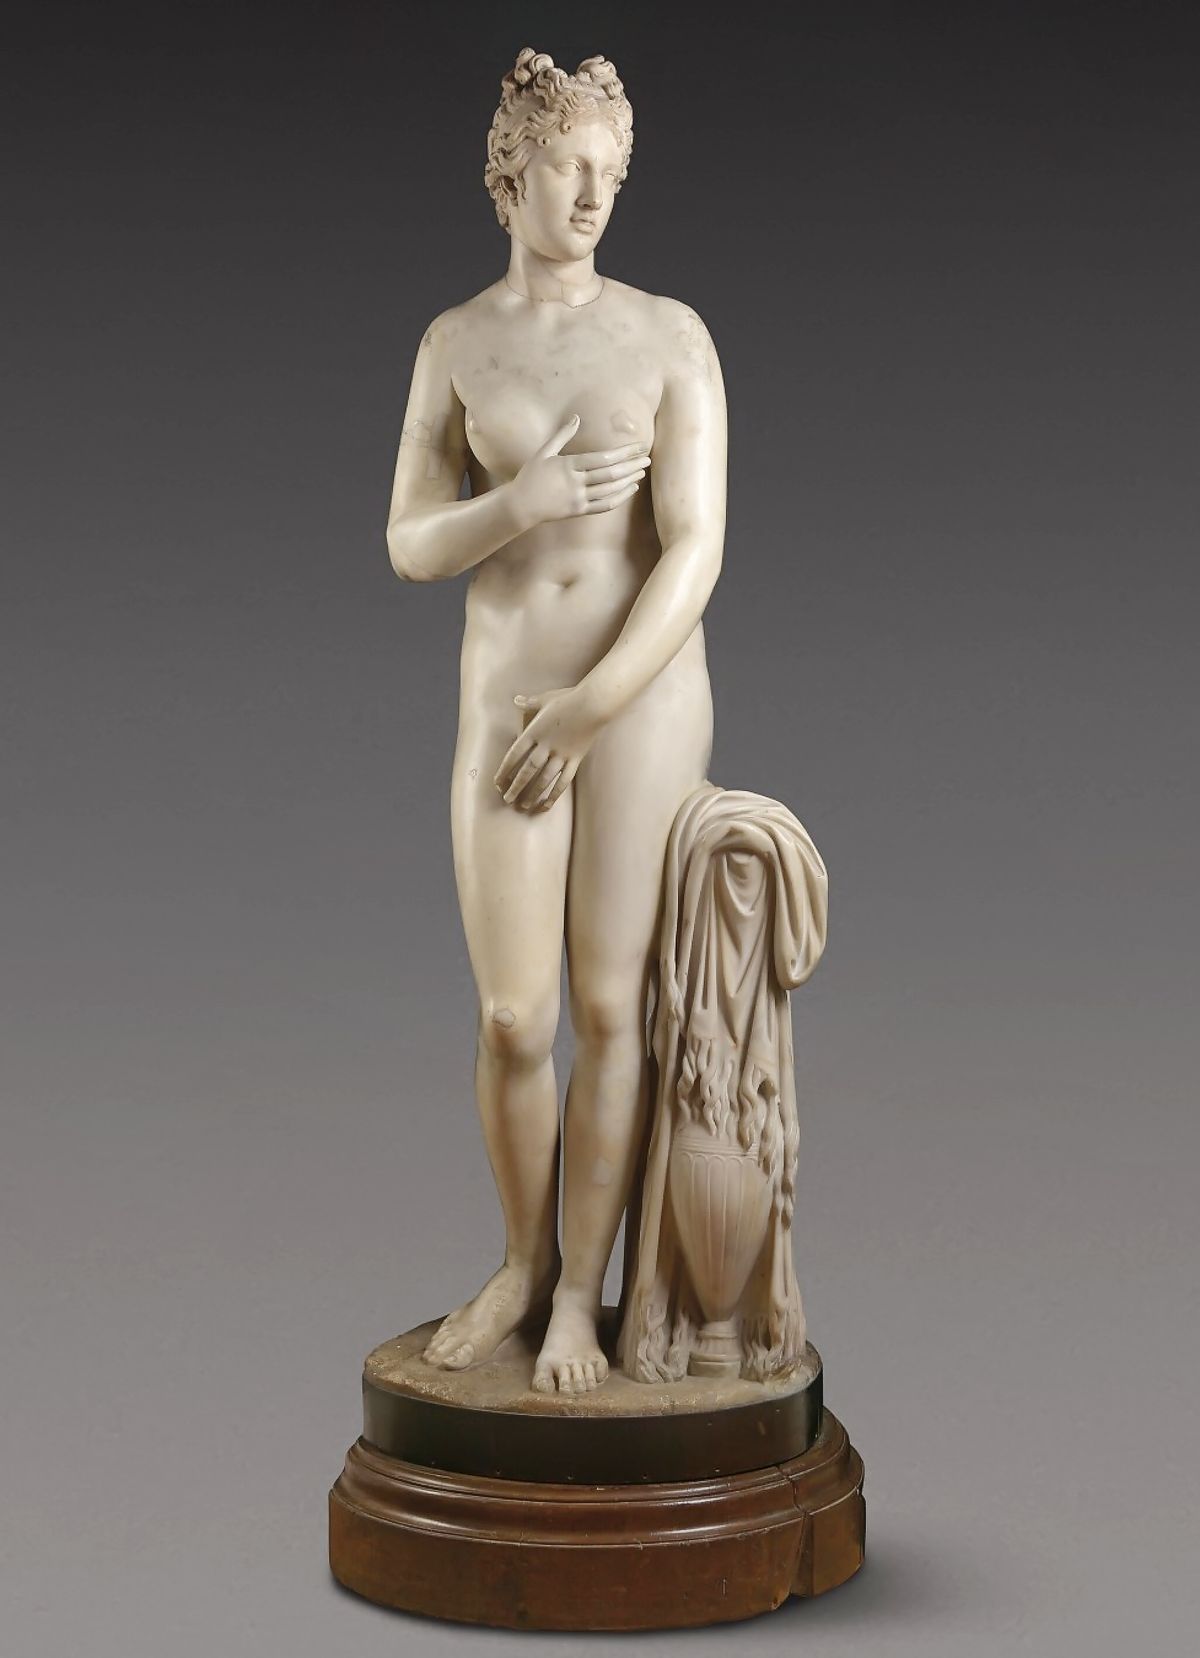 Мраморная статуя Афродиты из коллекции Гамильтона